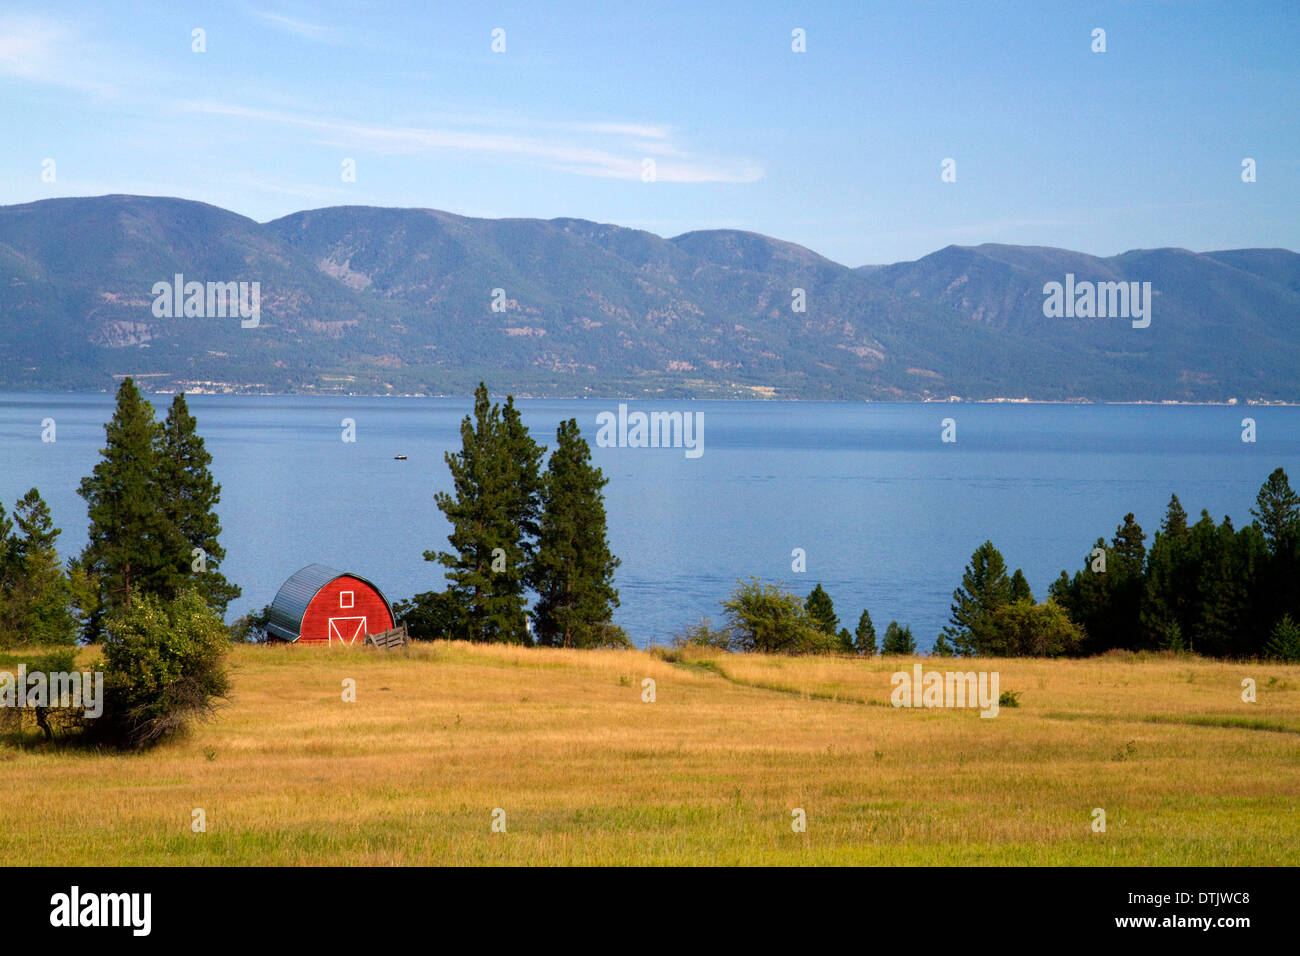 Granero rojo y tierras de cultivo a lo largo de lago Flathead, Montana, EE.UU. Foto de stock